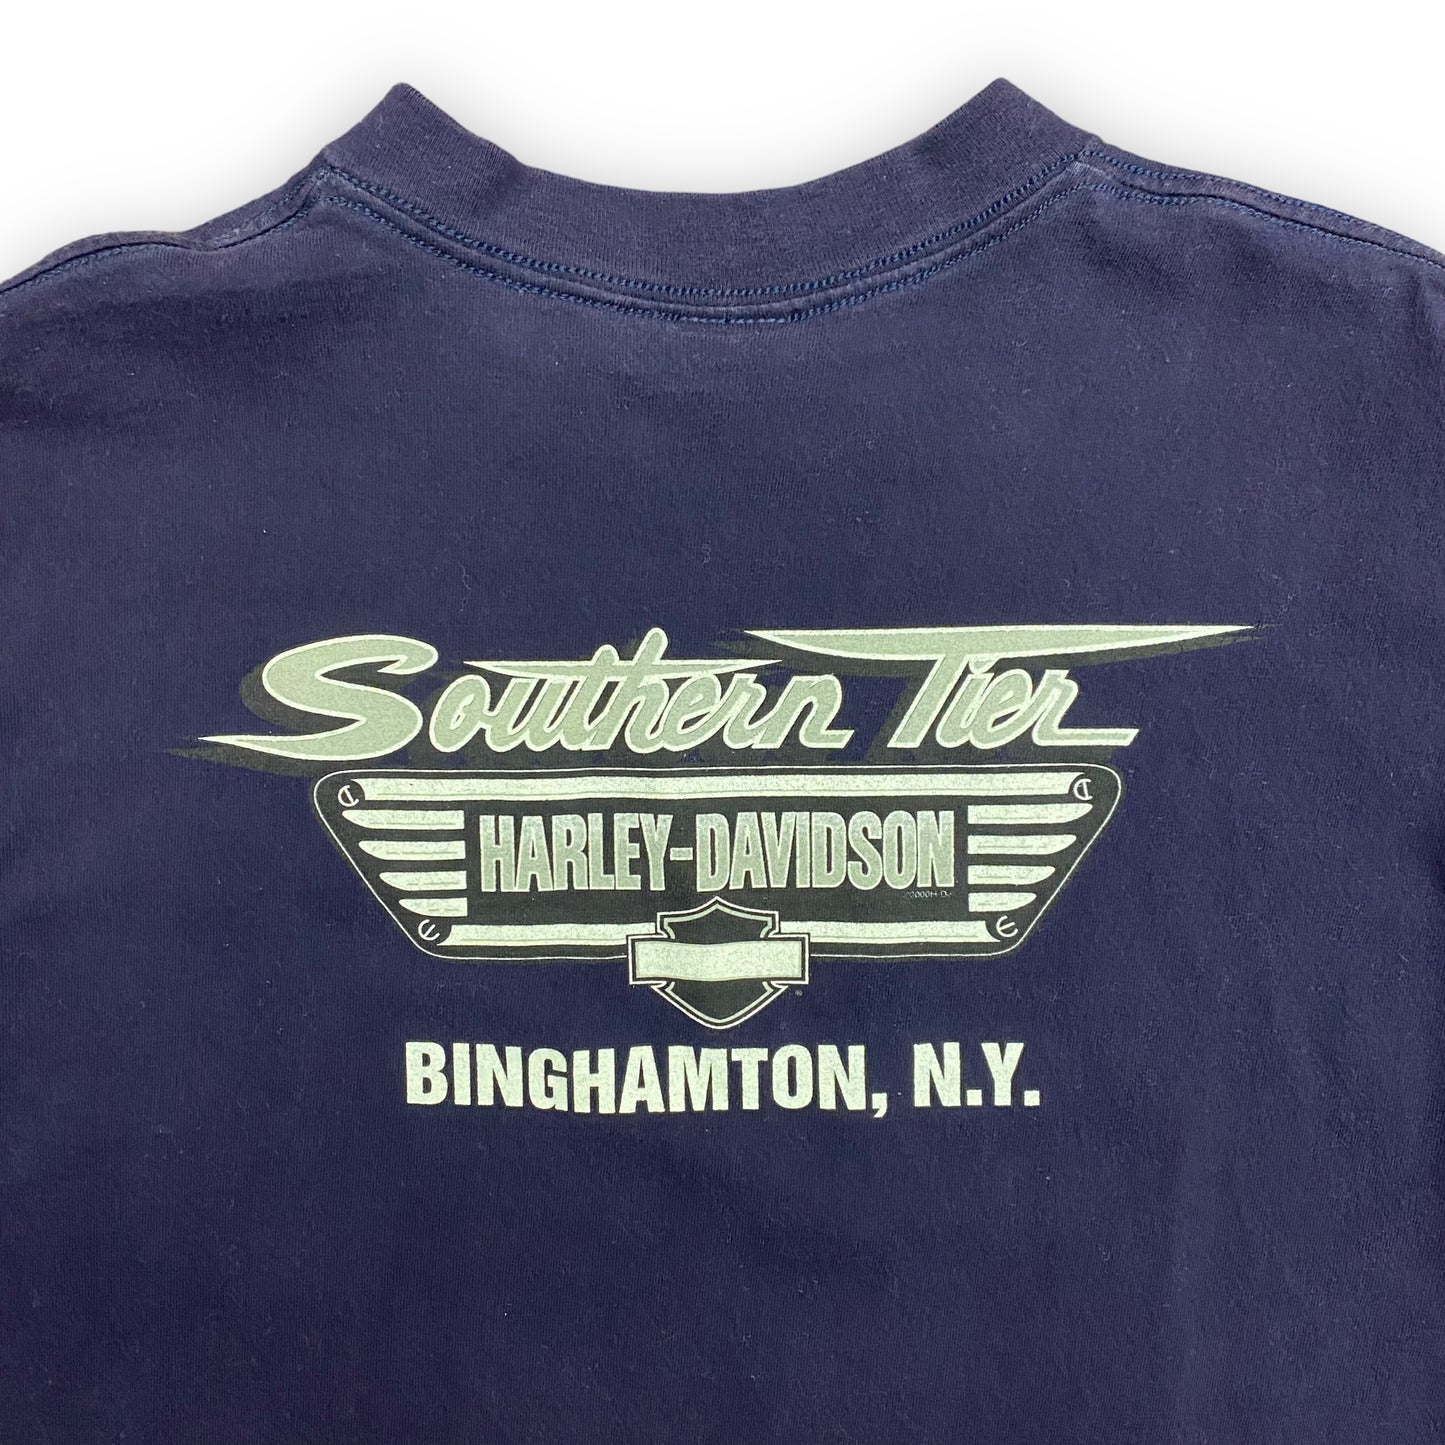 2000 Harley Davidson Motorcycles: Binghamton NY Tee - Size Large